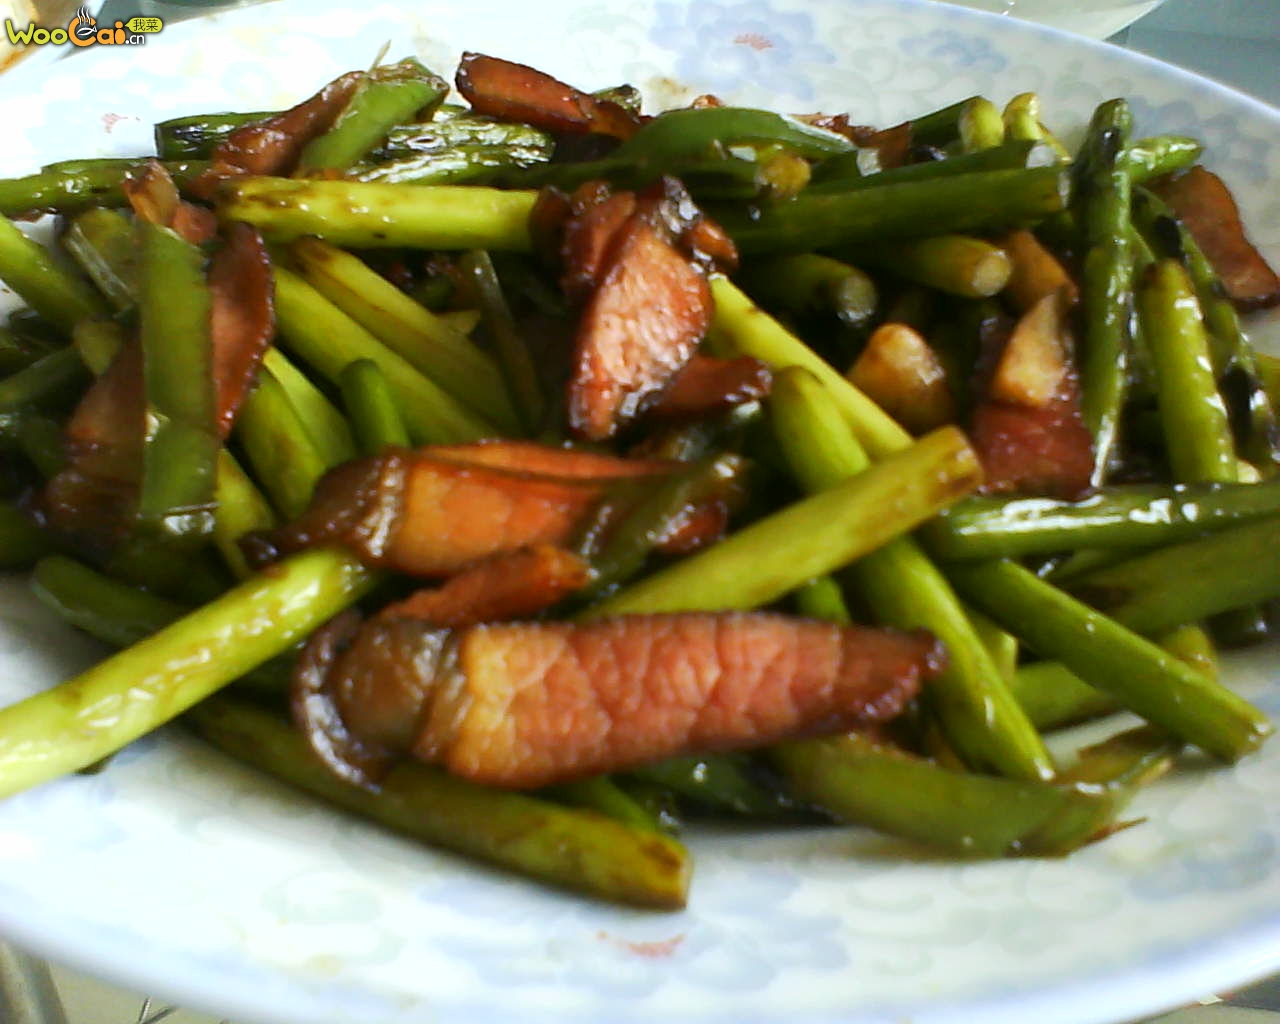 昔日皇家才能吃上的美食——爆炒红菜苔 一年只有两个月可以吃到它__万家热线-安徽门户网站